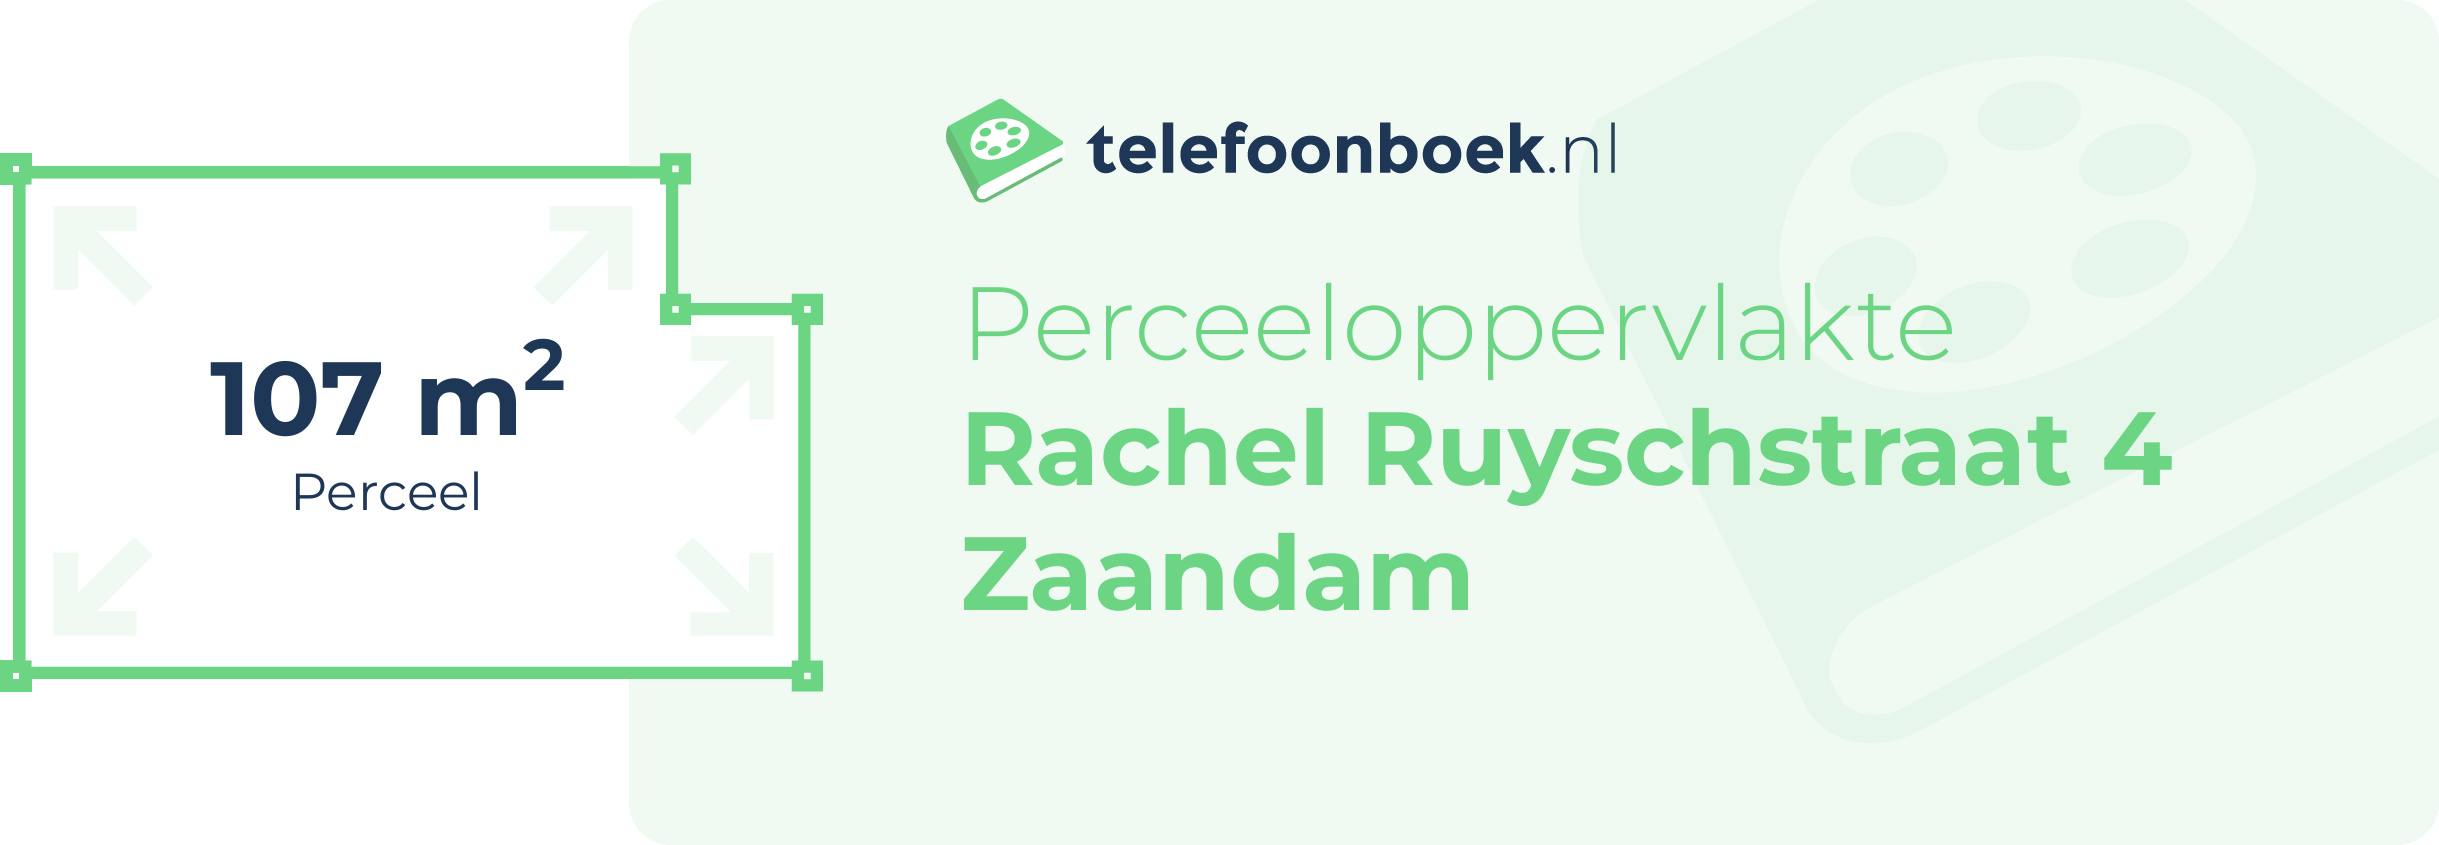 Perceeloppervlakte Rachel Ruyschstraat 4 Zaandam